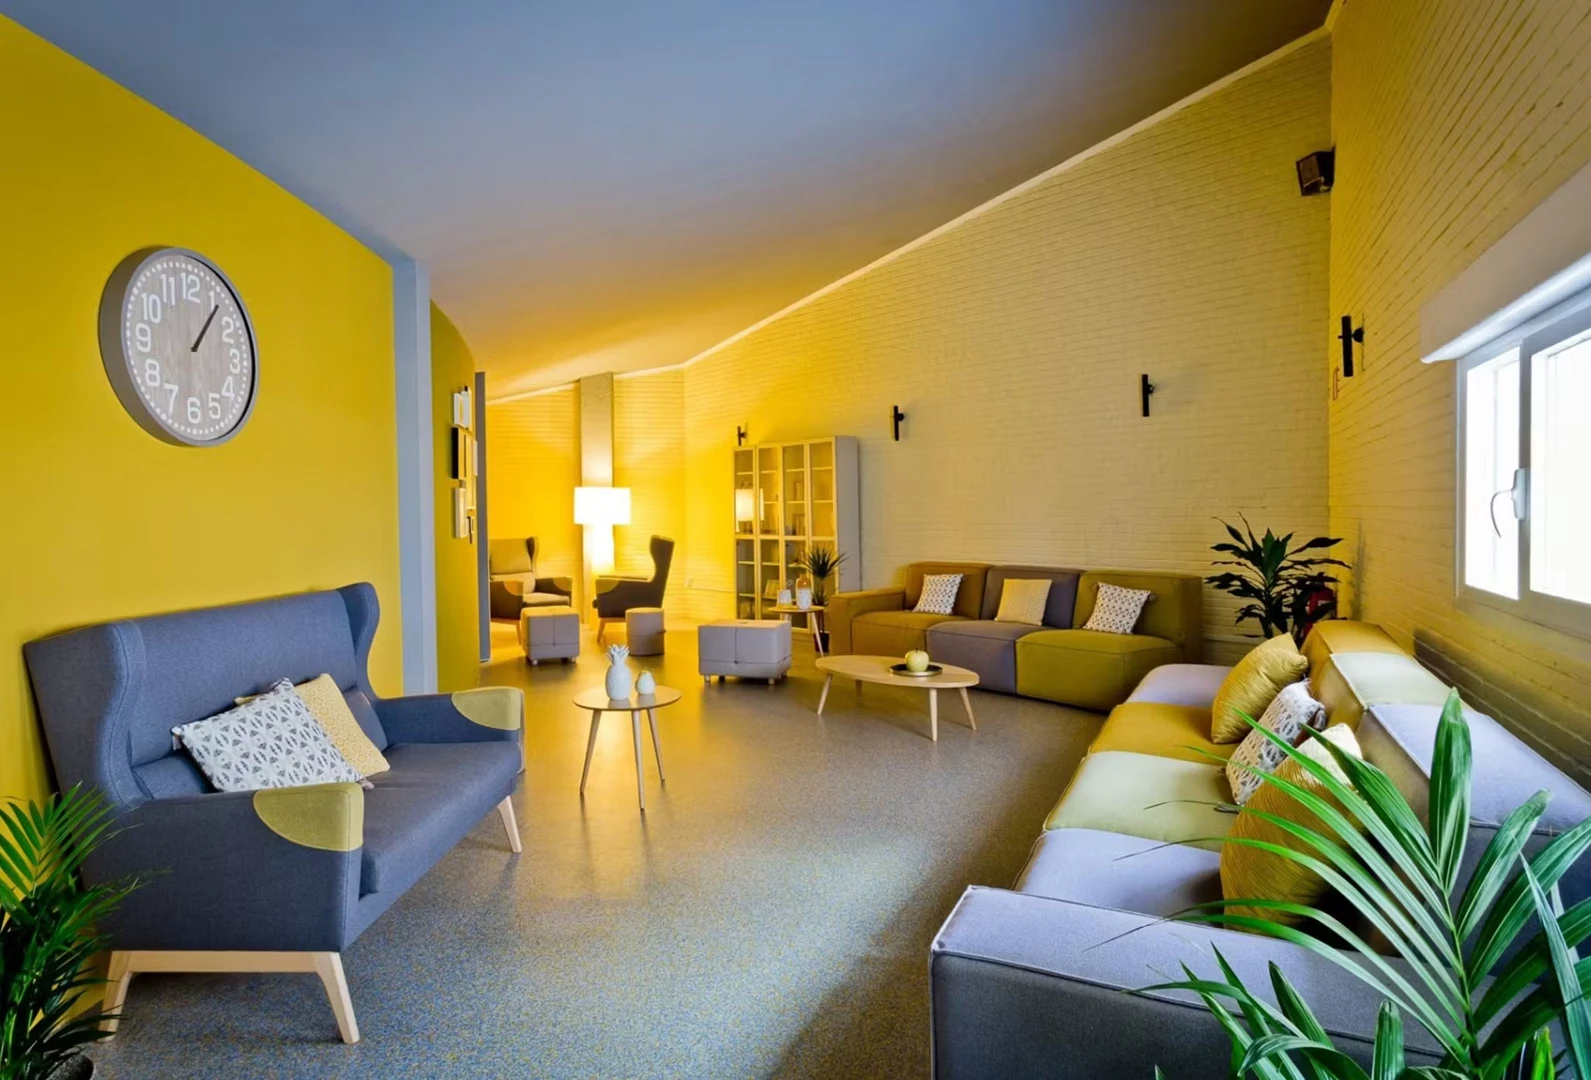 Cheap shared room in Pamplona/iruña